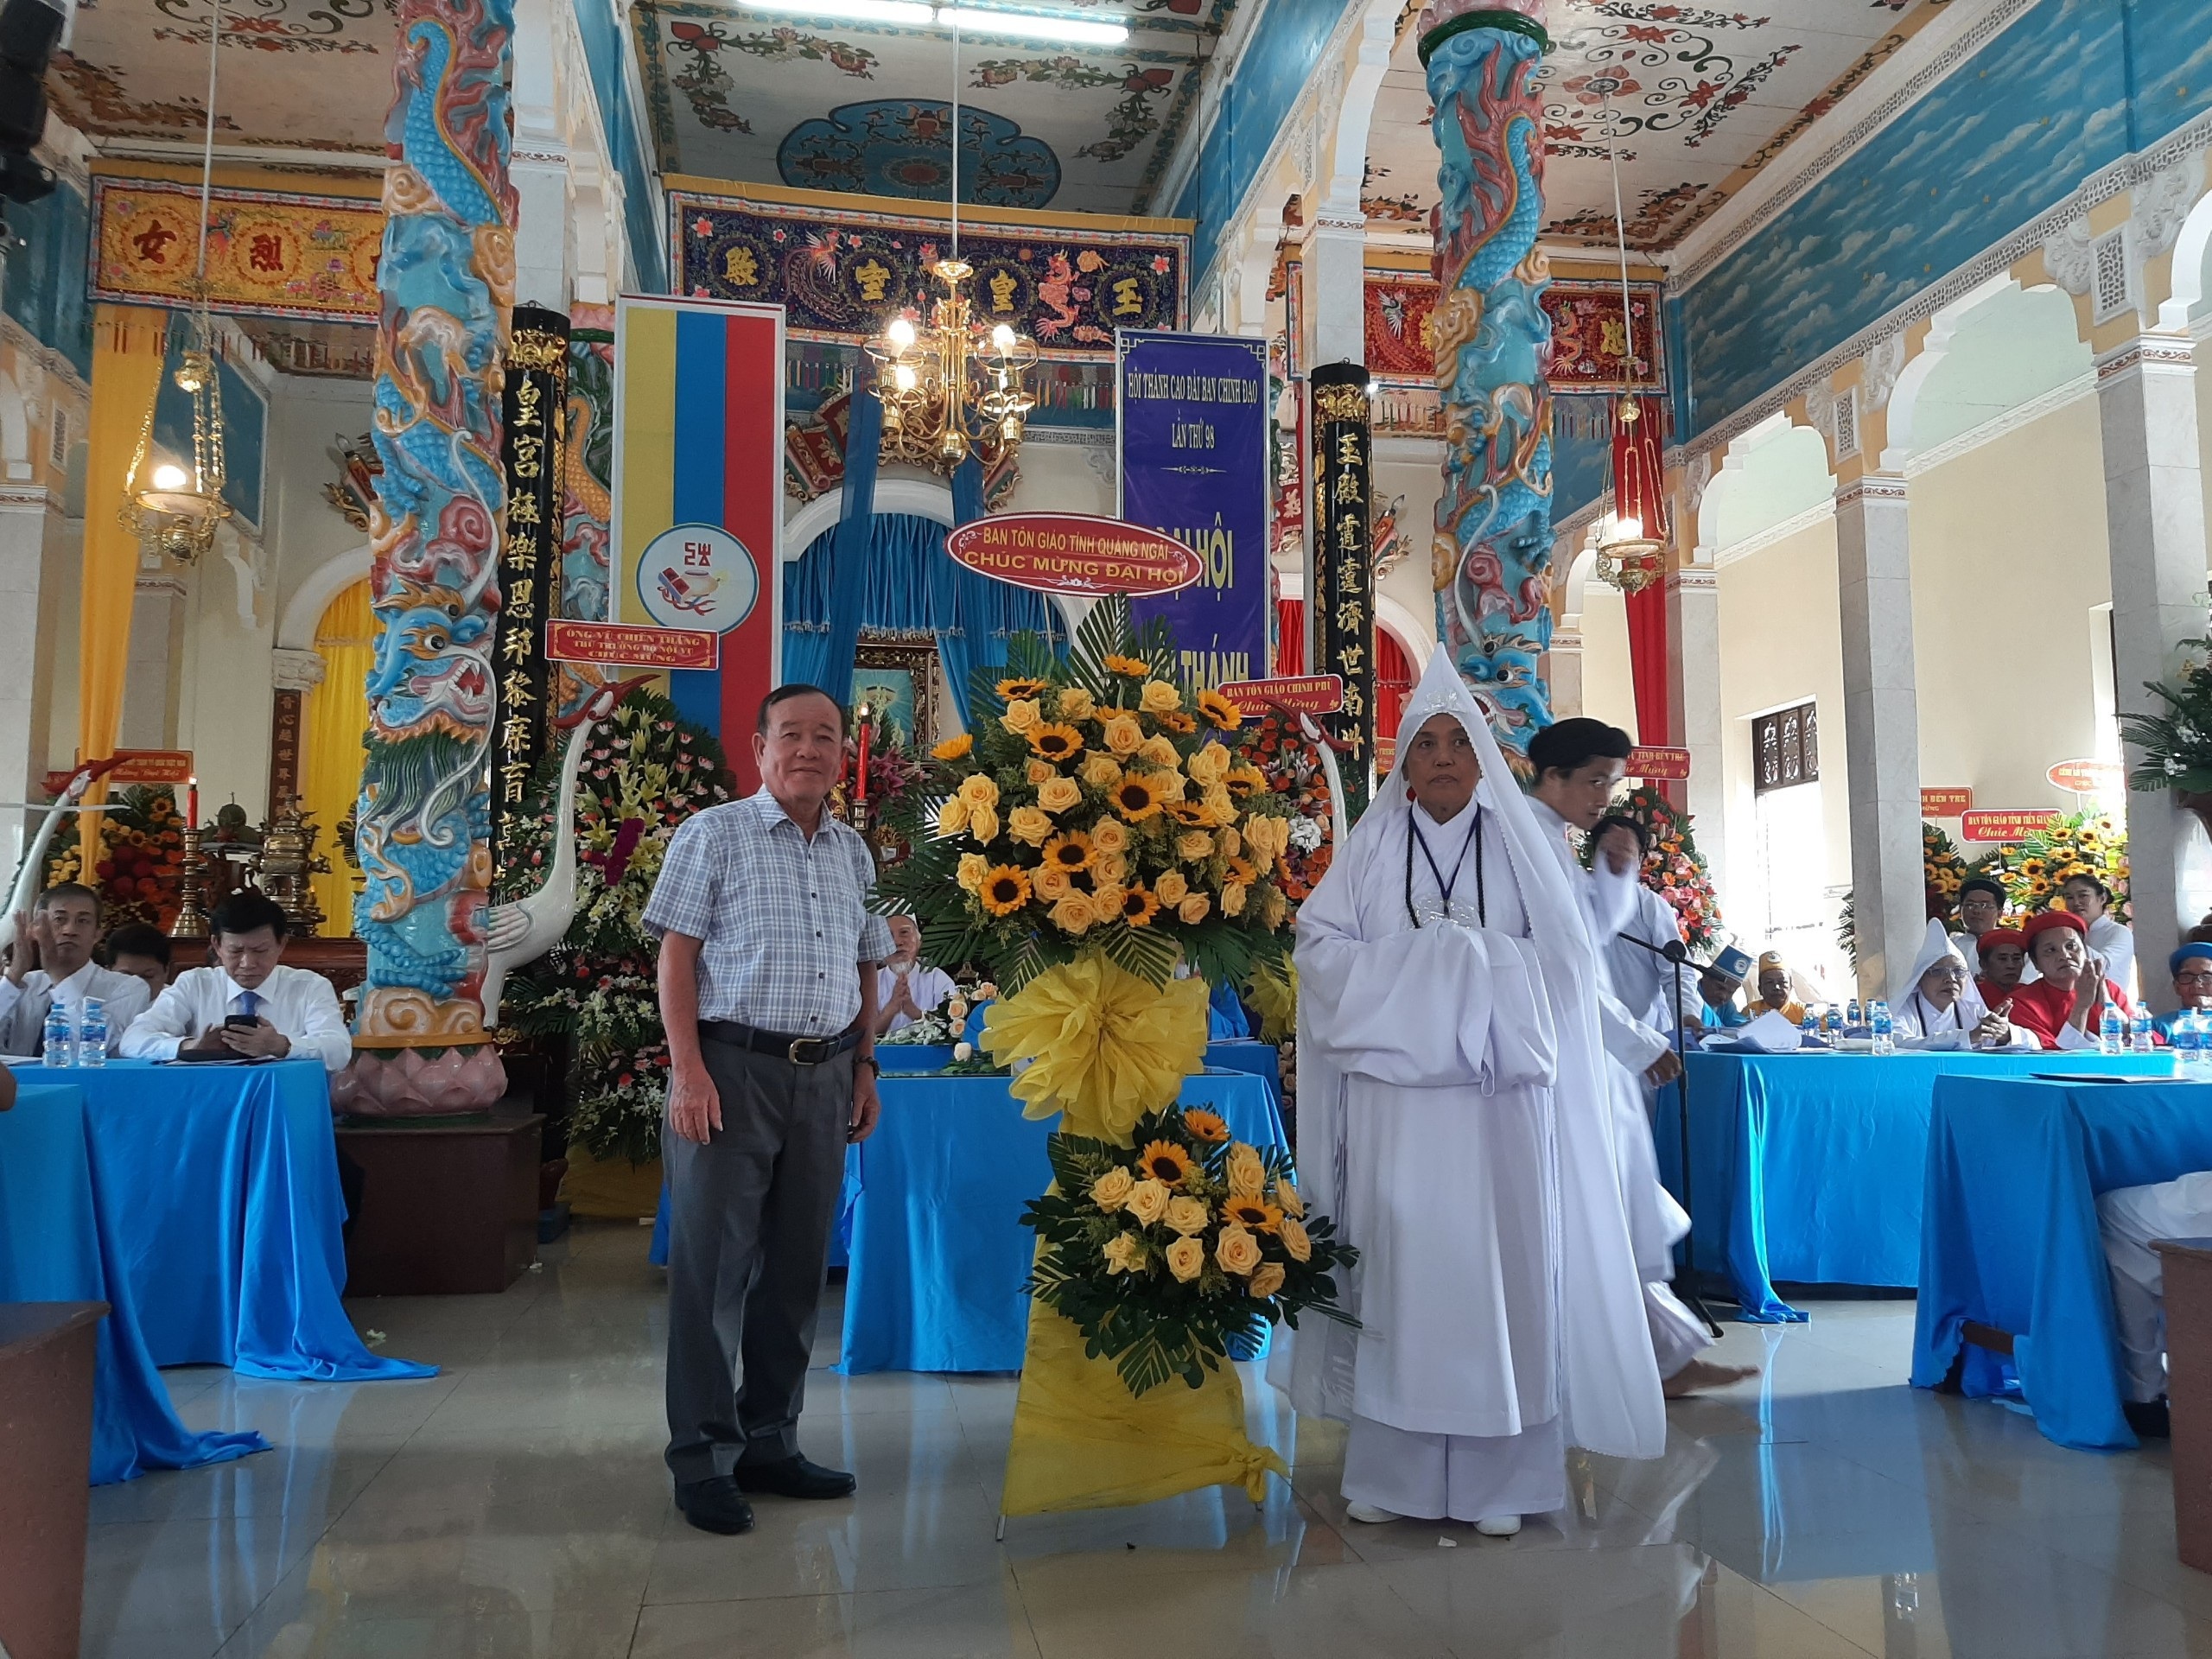 Lãnh đạo Sở Nội vụ, Ban Tôn giáo tỉnh Quảng Ngãi tham dự Đại hội Hội thánh Cao Đài Ban Chỉnh đạo nhiệm kỳ VI (2022-2027) và làm việc với Ban Thường trực Hội thánh